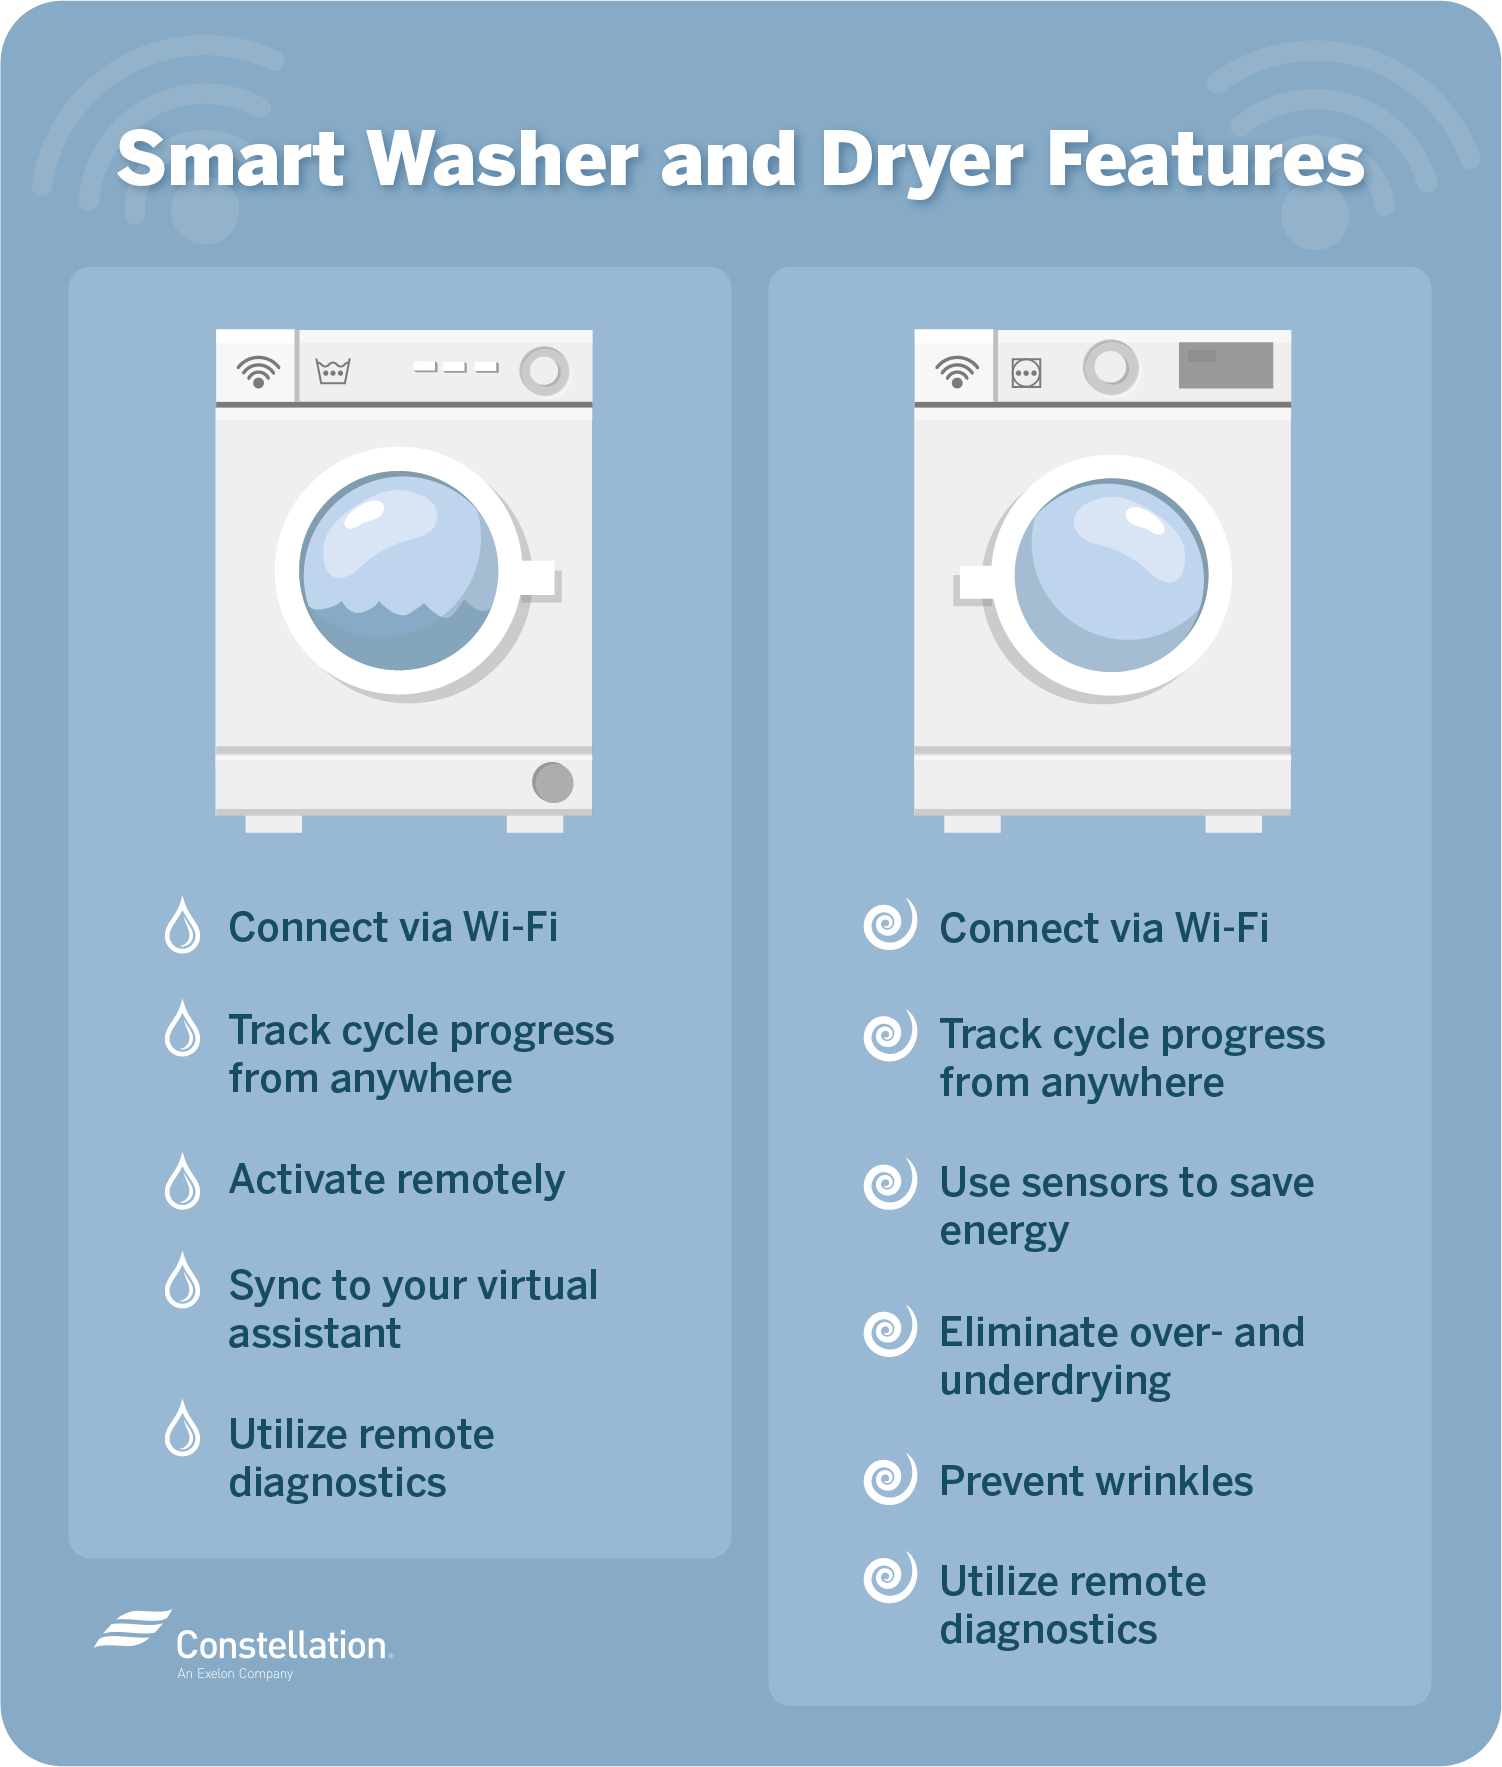 智能洗衣机和烘干机的特点